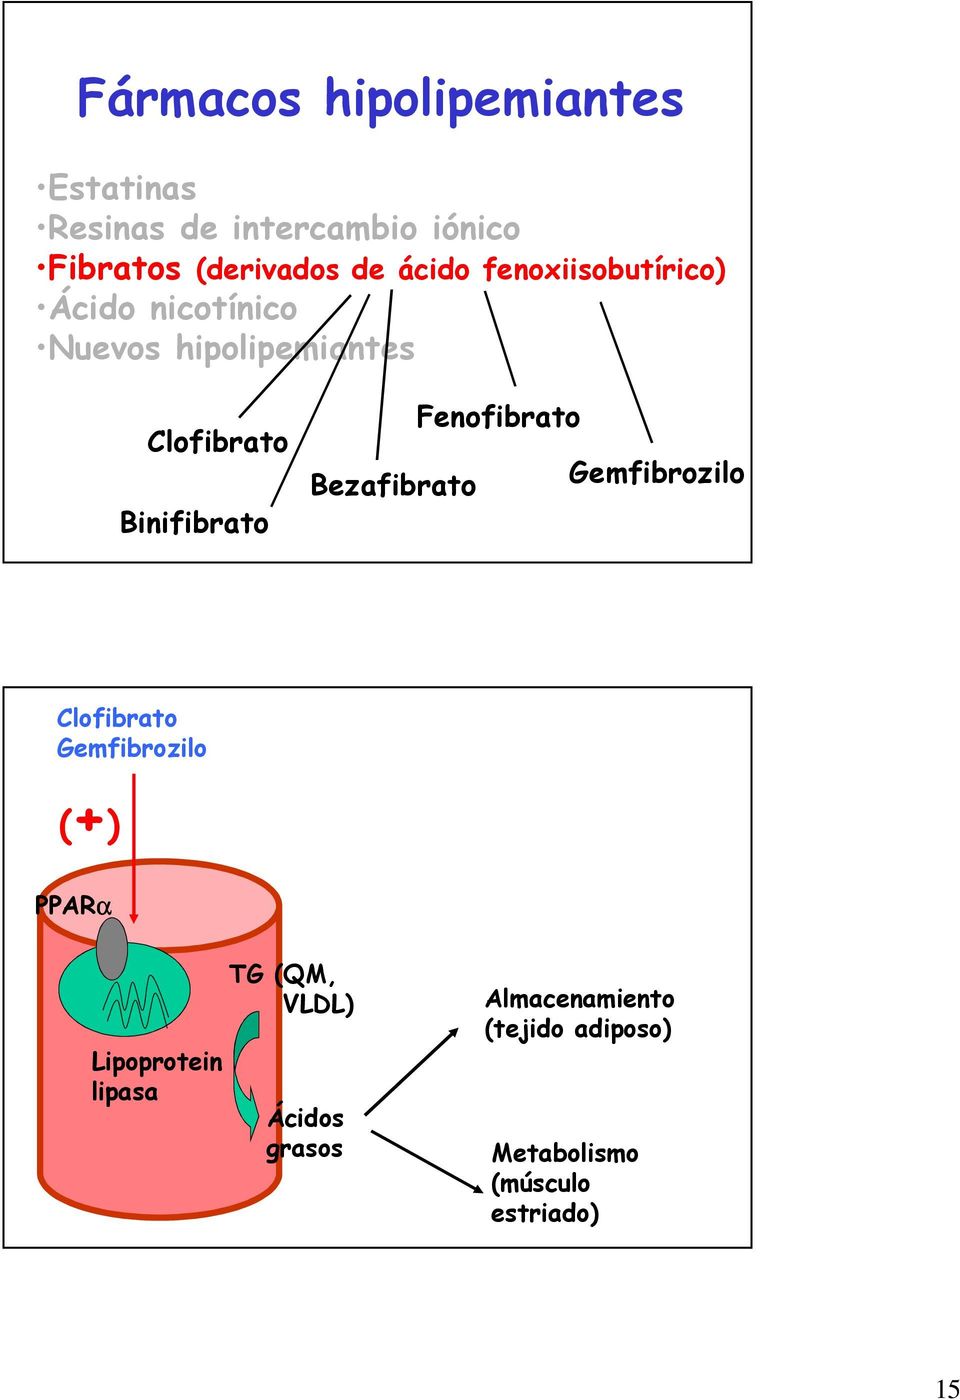 Bezafibrato Fenofibrato Gemfibrozilo Clofibrato Gemfibrozilo (+) PPARα Lipoprotein lipasa